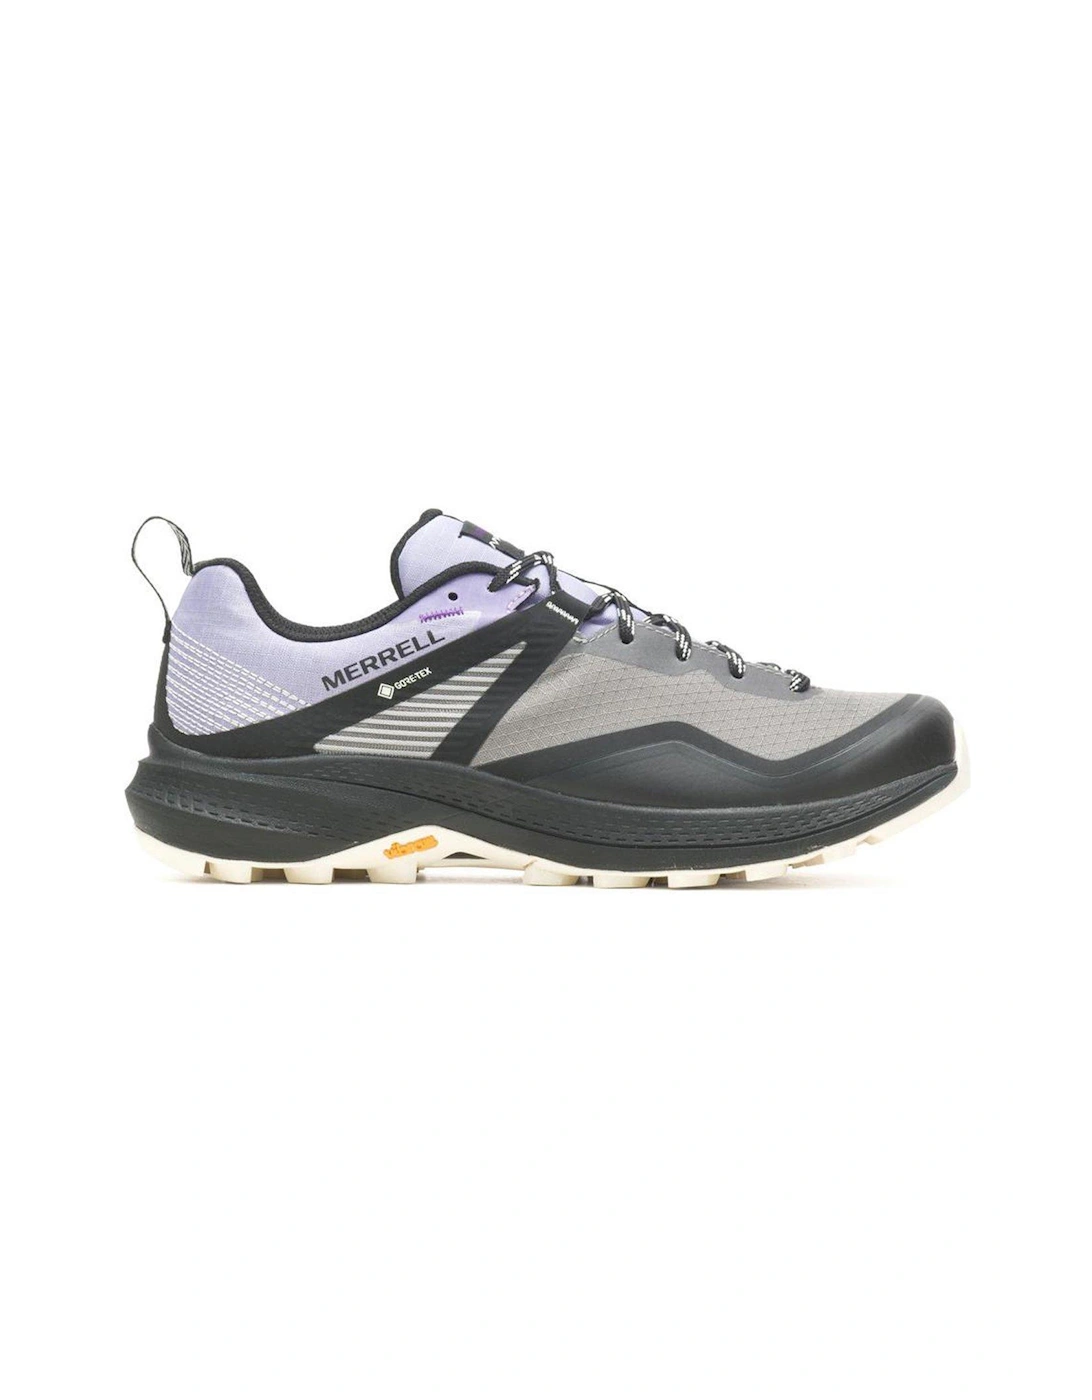 Womens Mqm 3 Goretex Hiking Shoes - Grey/light Purple, 3 of 2